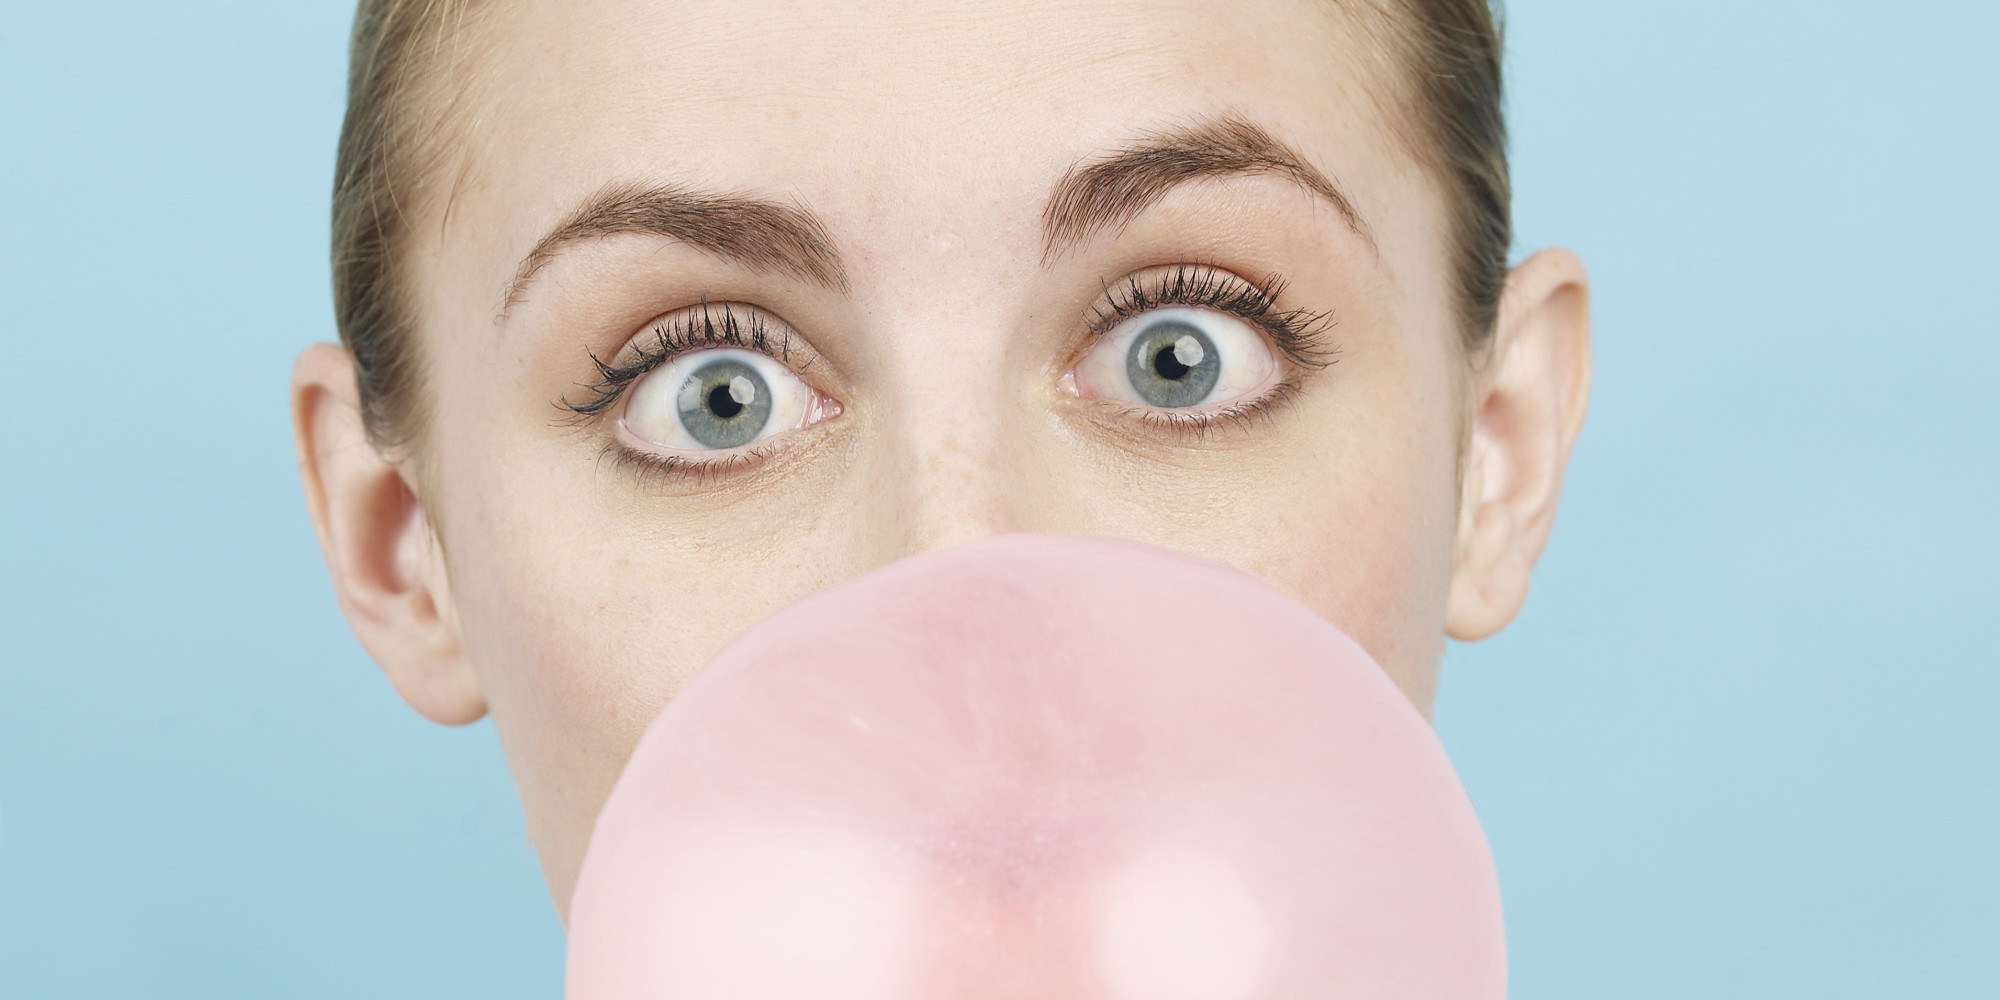 Chewing gum, meglio non inghiottirle: ecco che succede se lo fate